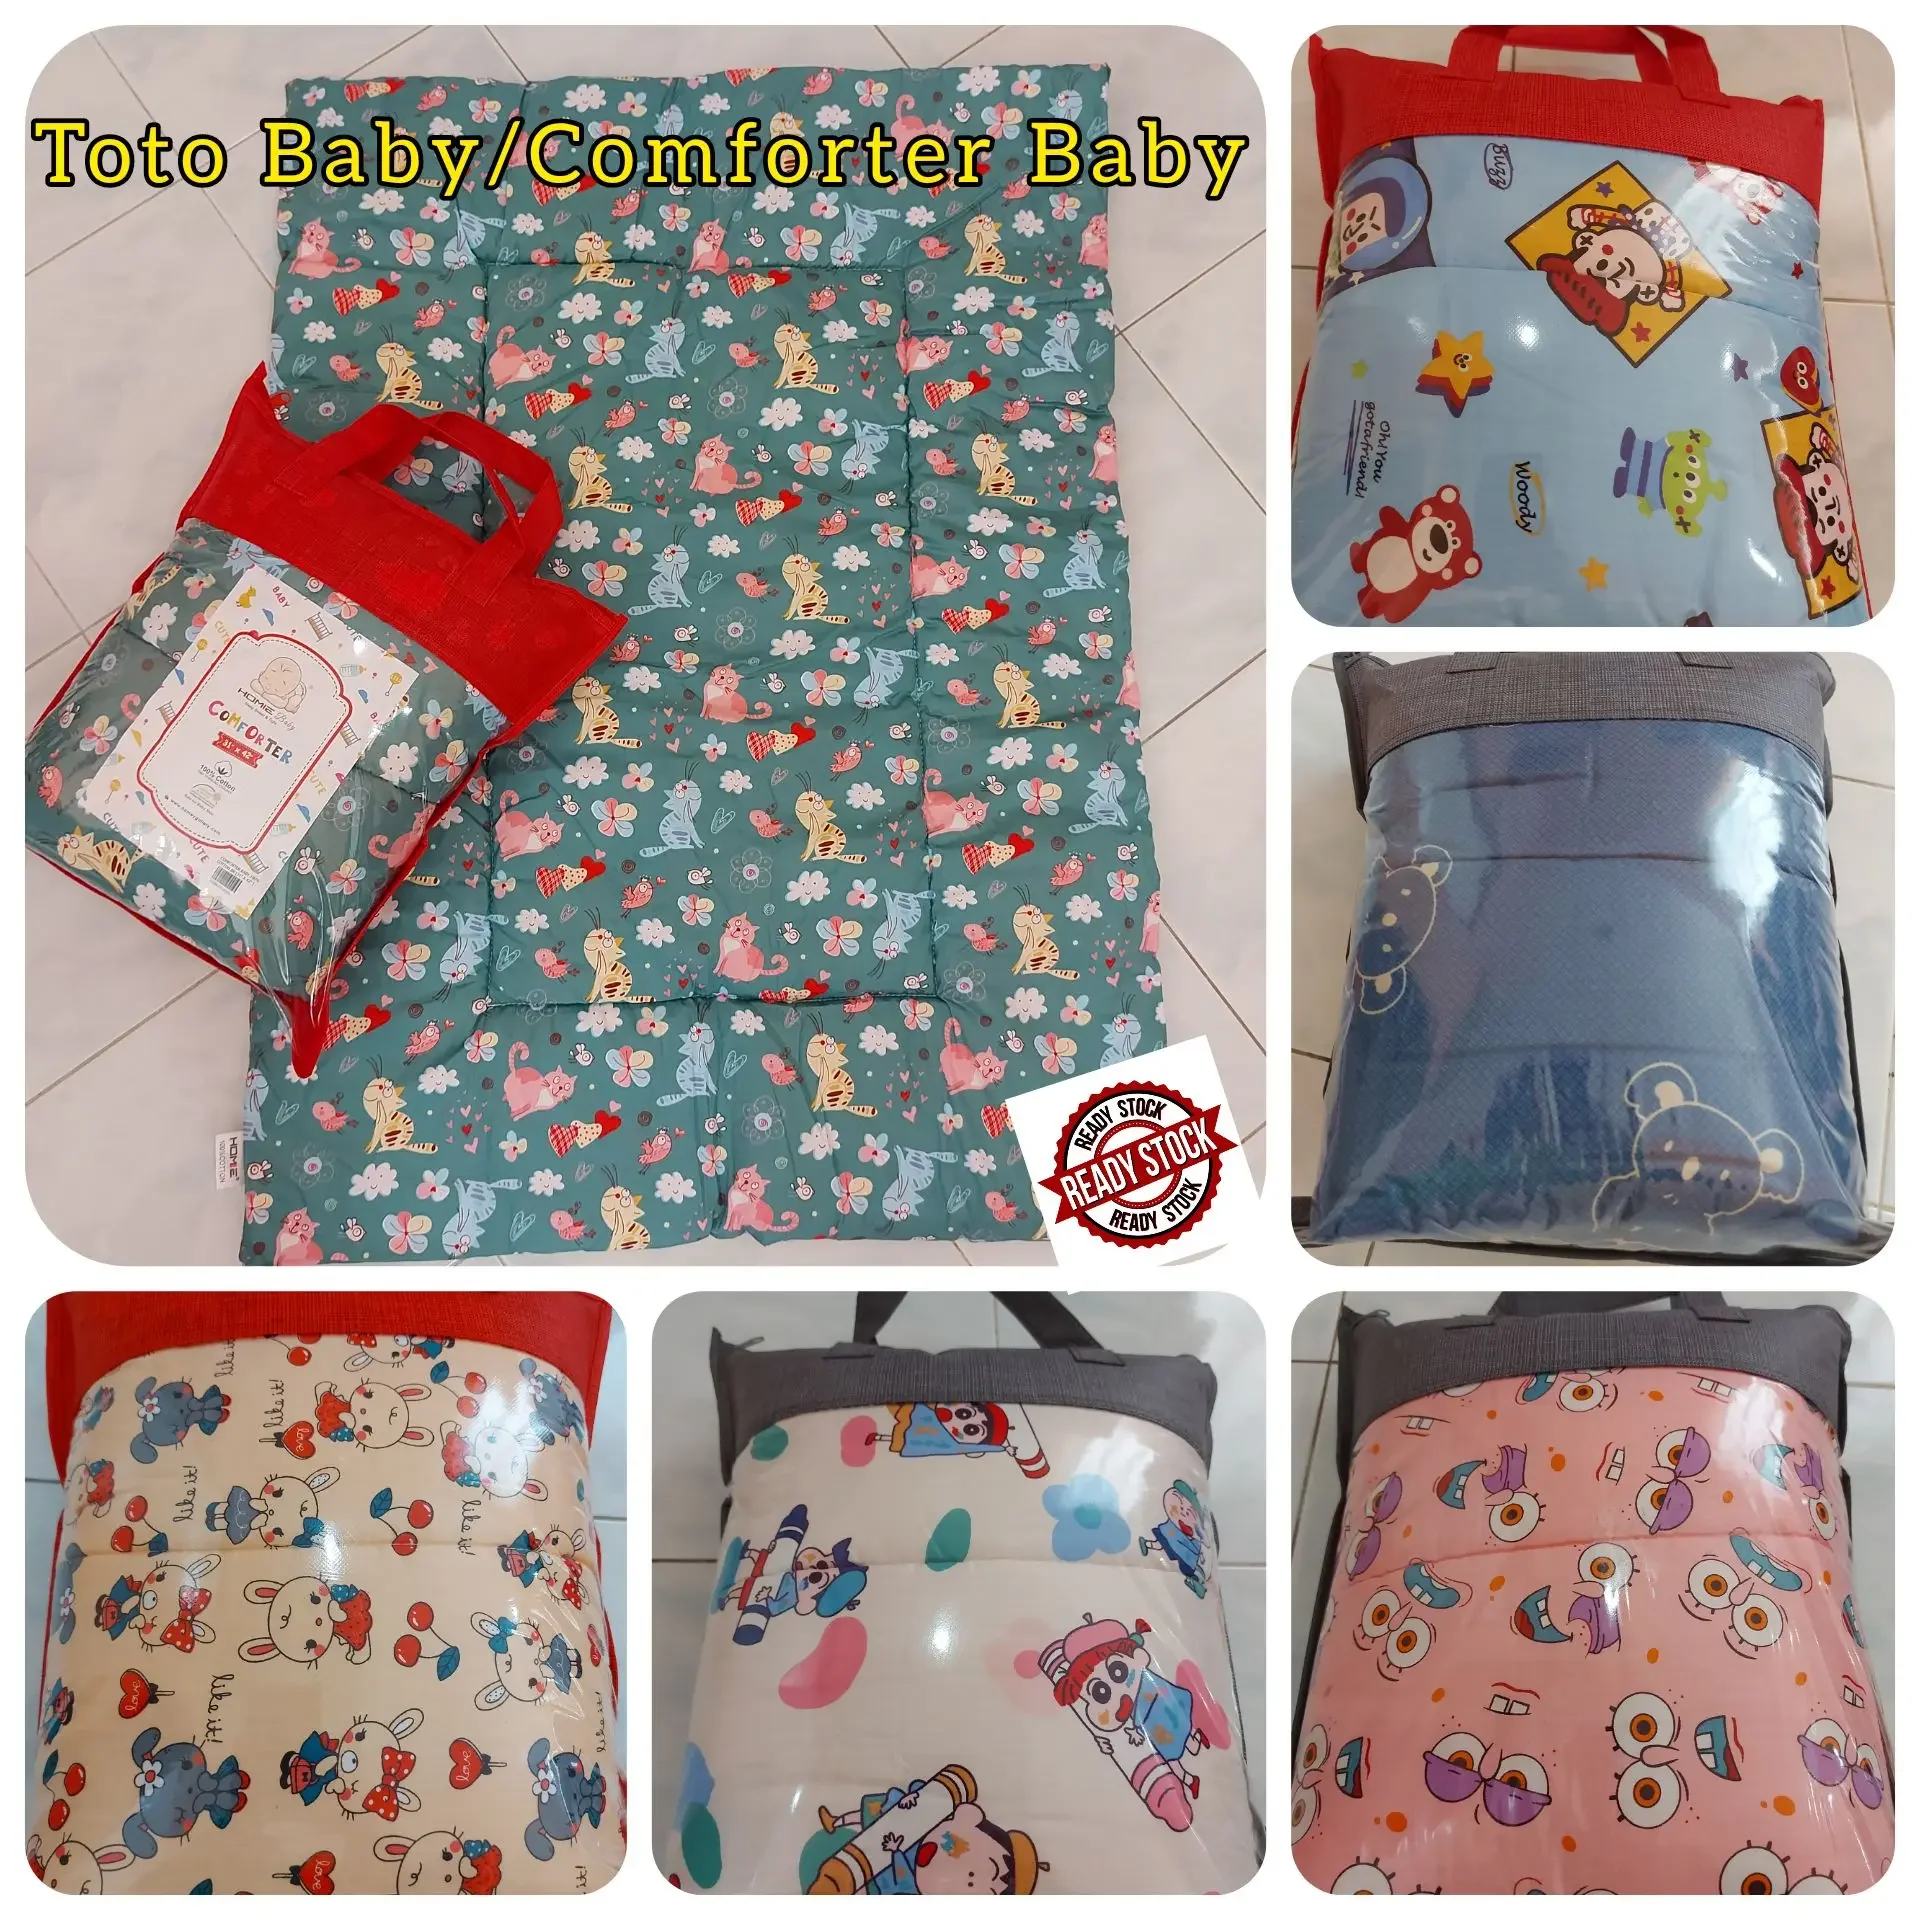 100% cotton Baby comforter/toto baby murah/comforter Baby jimat/Tilam Taska